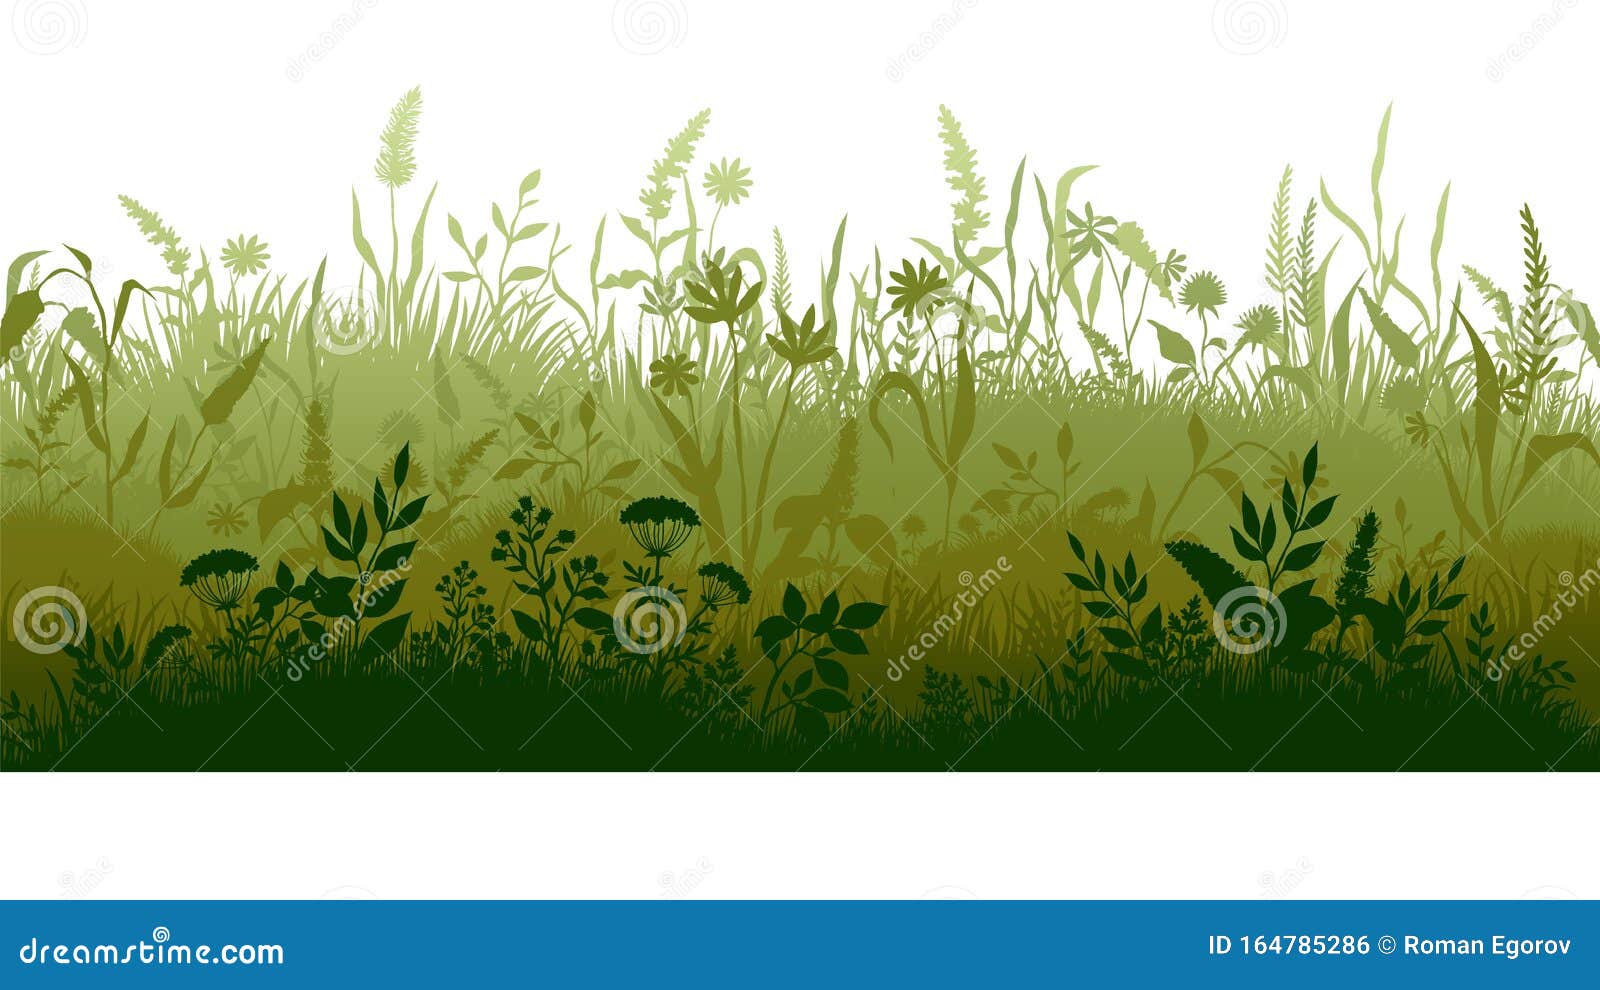 Cartoon Grassland Stock Illustrations – 3,890 Cartoon Grassland Stock  Illustrations, Vectors & Clipart - Dreamstime